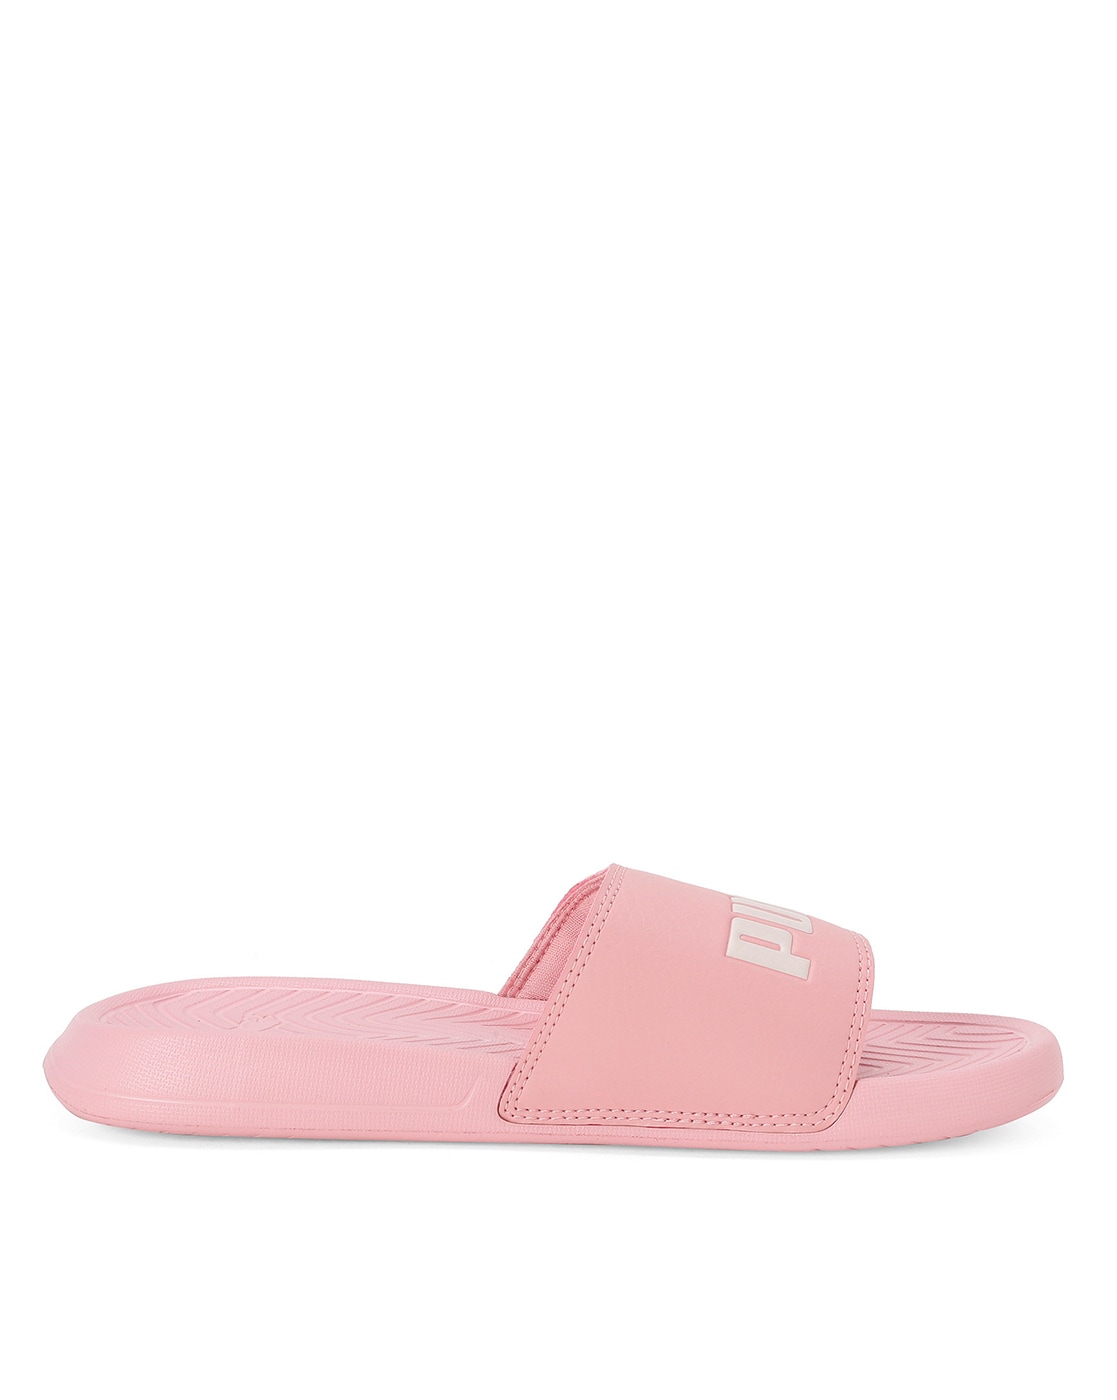 puma flip flops for ladies